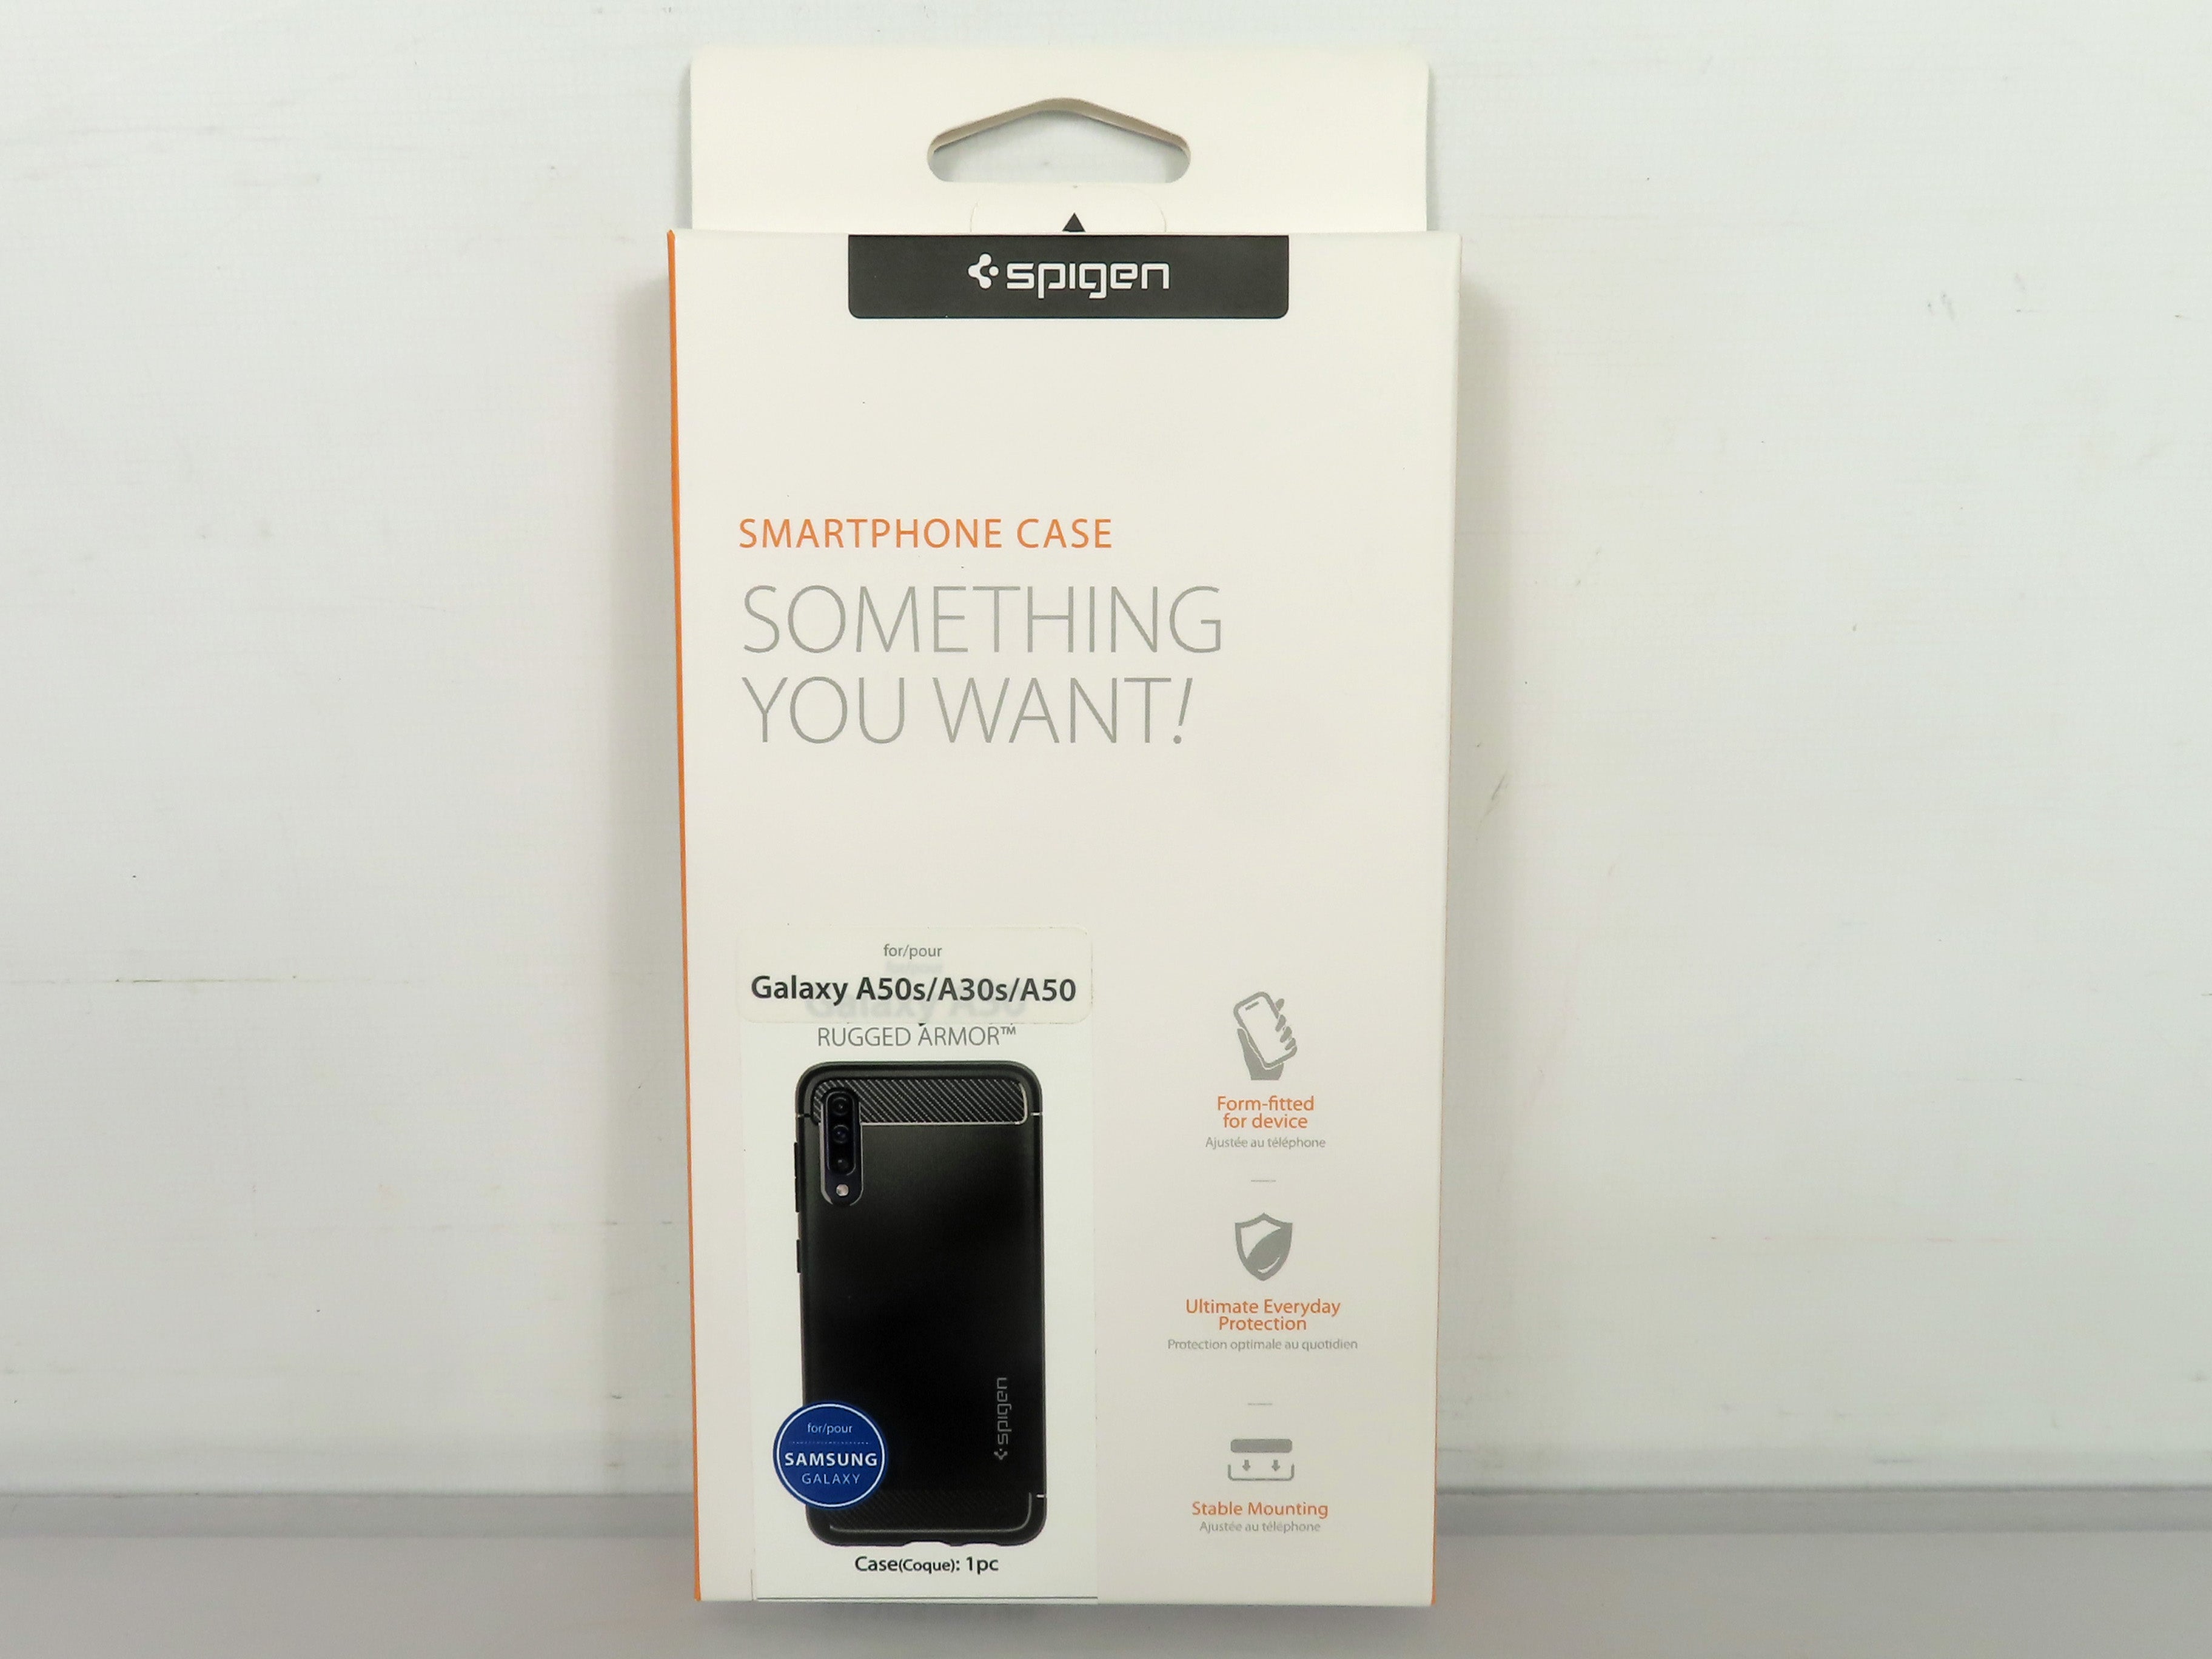 Spigen Rugged Armor Galaxy A50s/A30s/A50 Smartphone Case